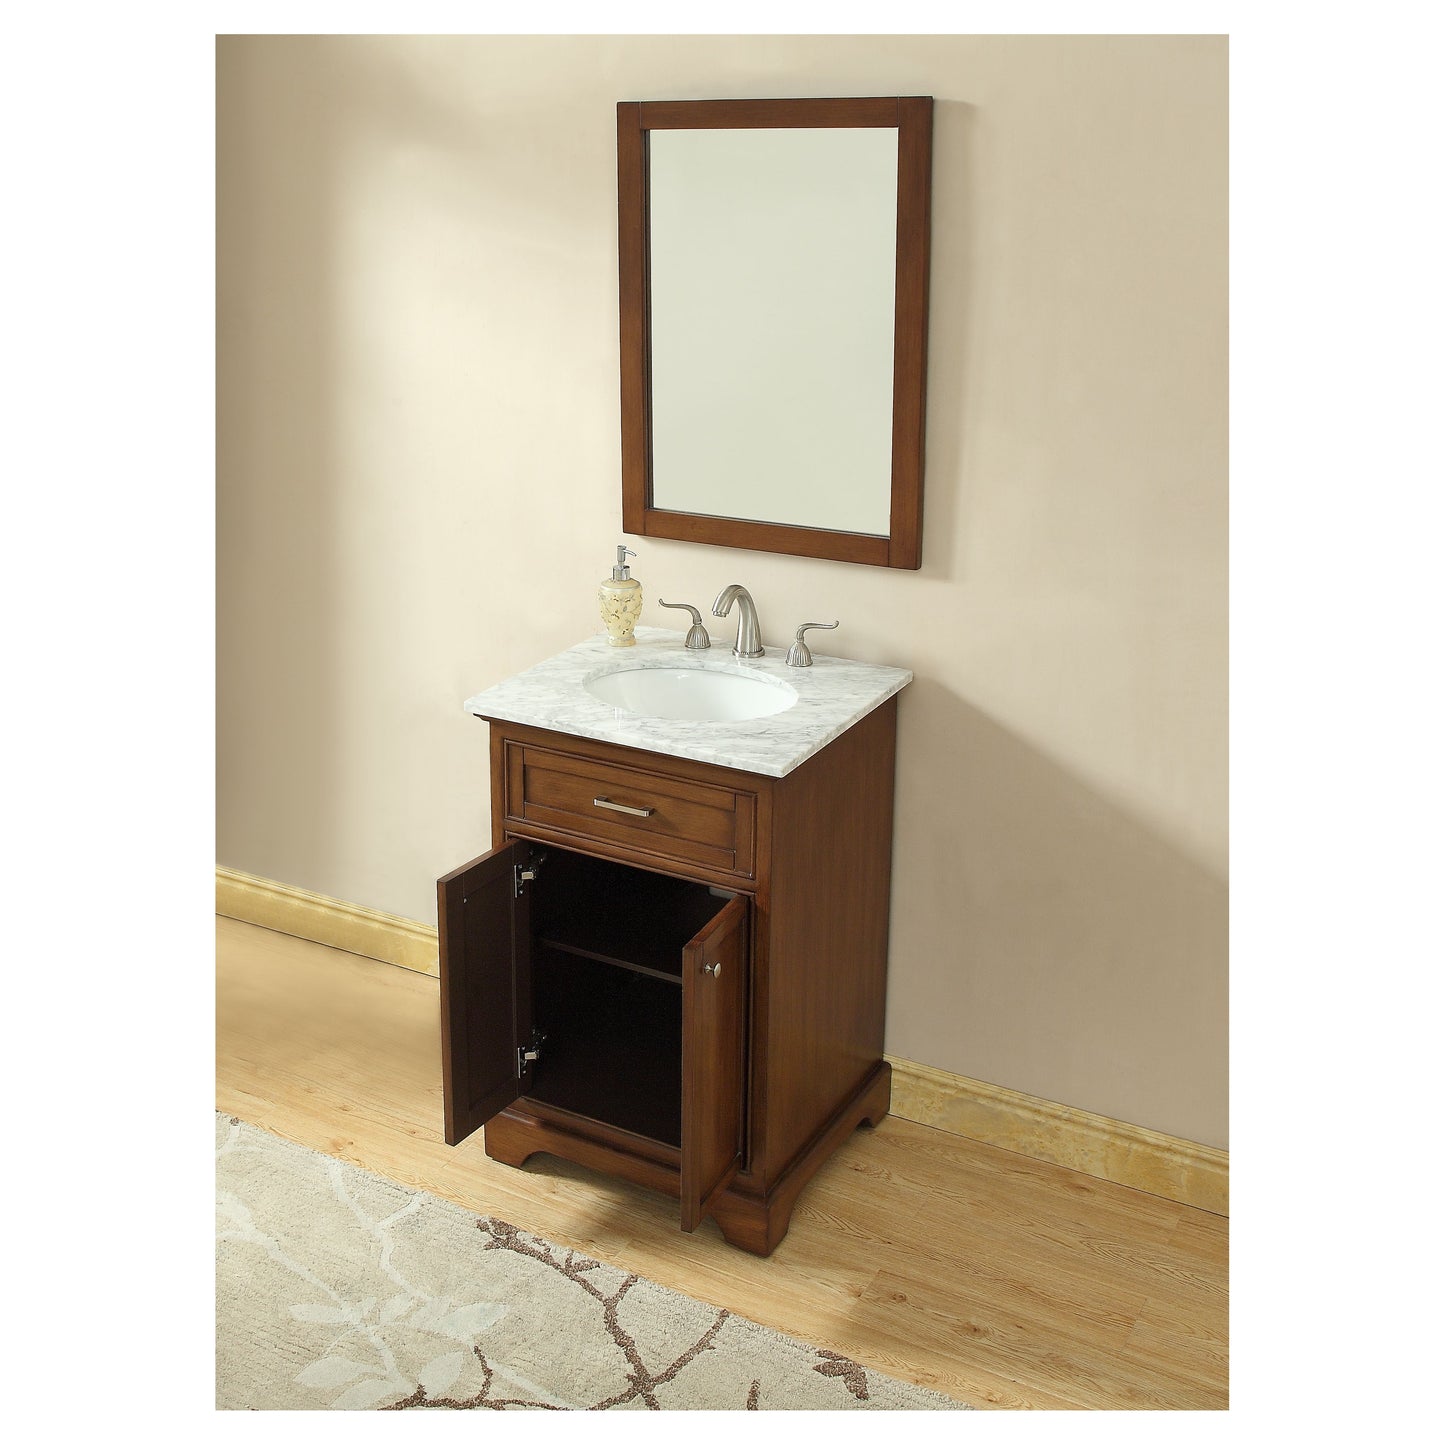 VF15024TK 24" Single Bathroom Vanity Set in Teak